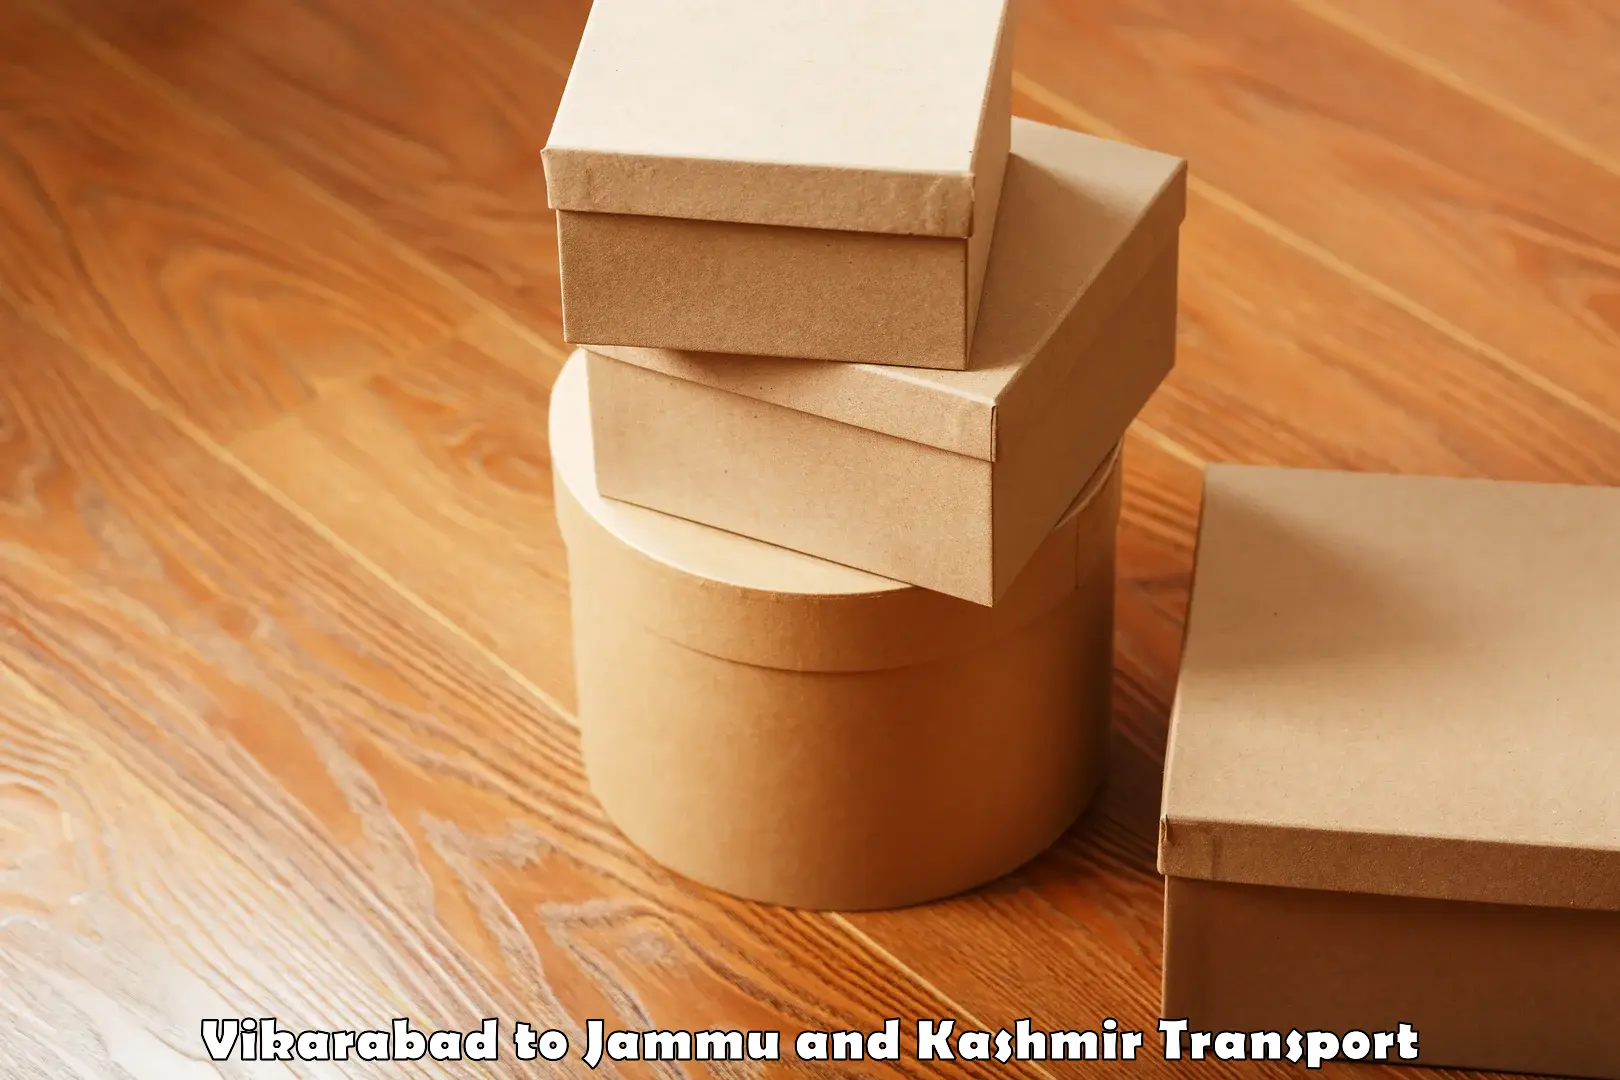 Shipping partner in Vikarabad to Jammu and Kashmir